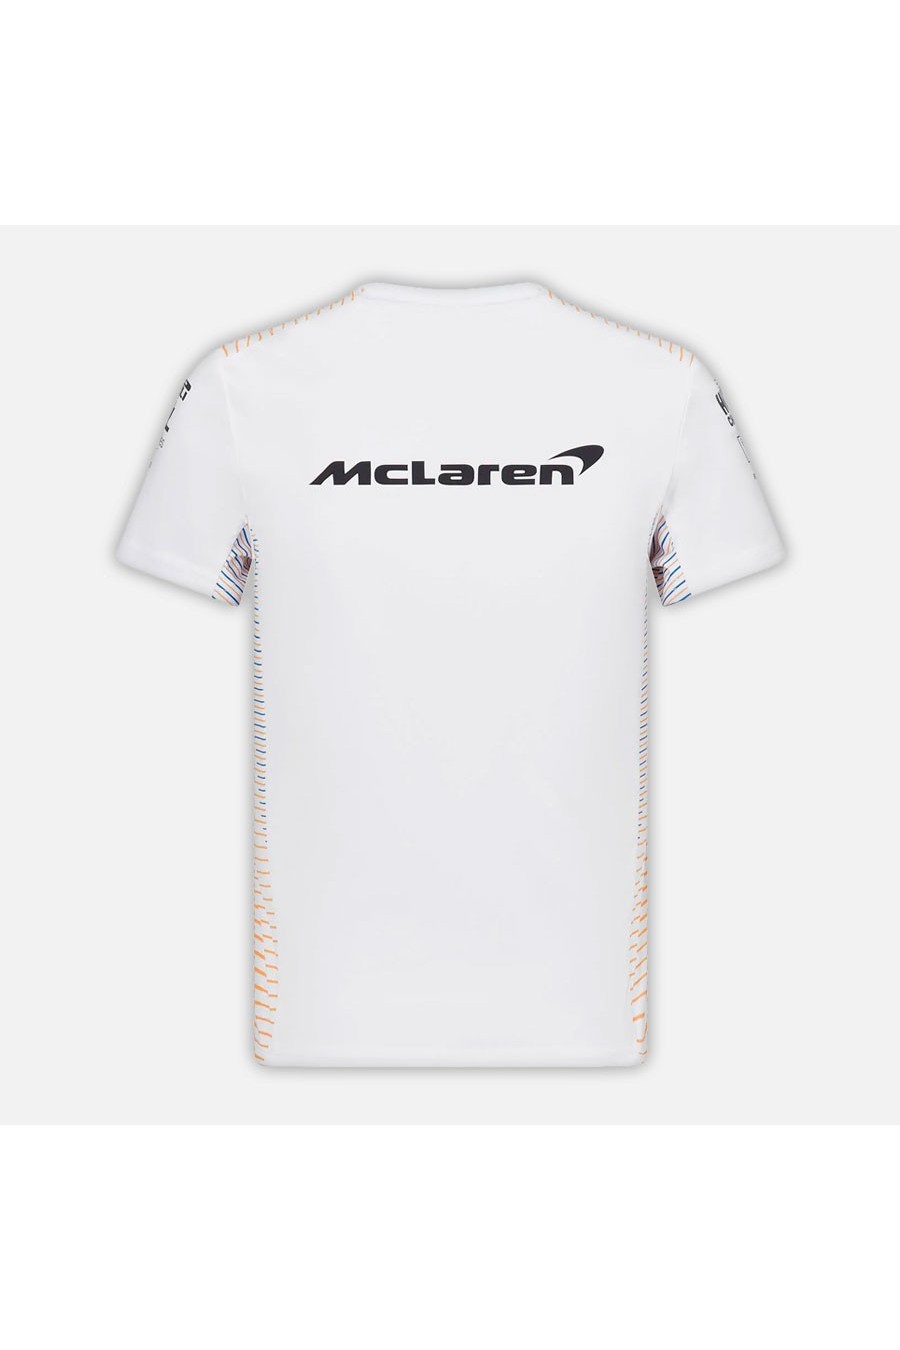 McLaren F1 T-shirt för barn